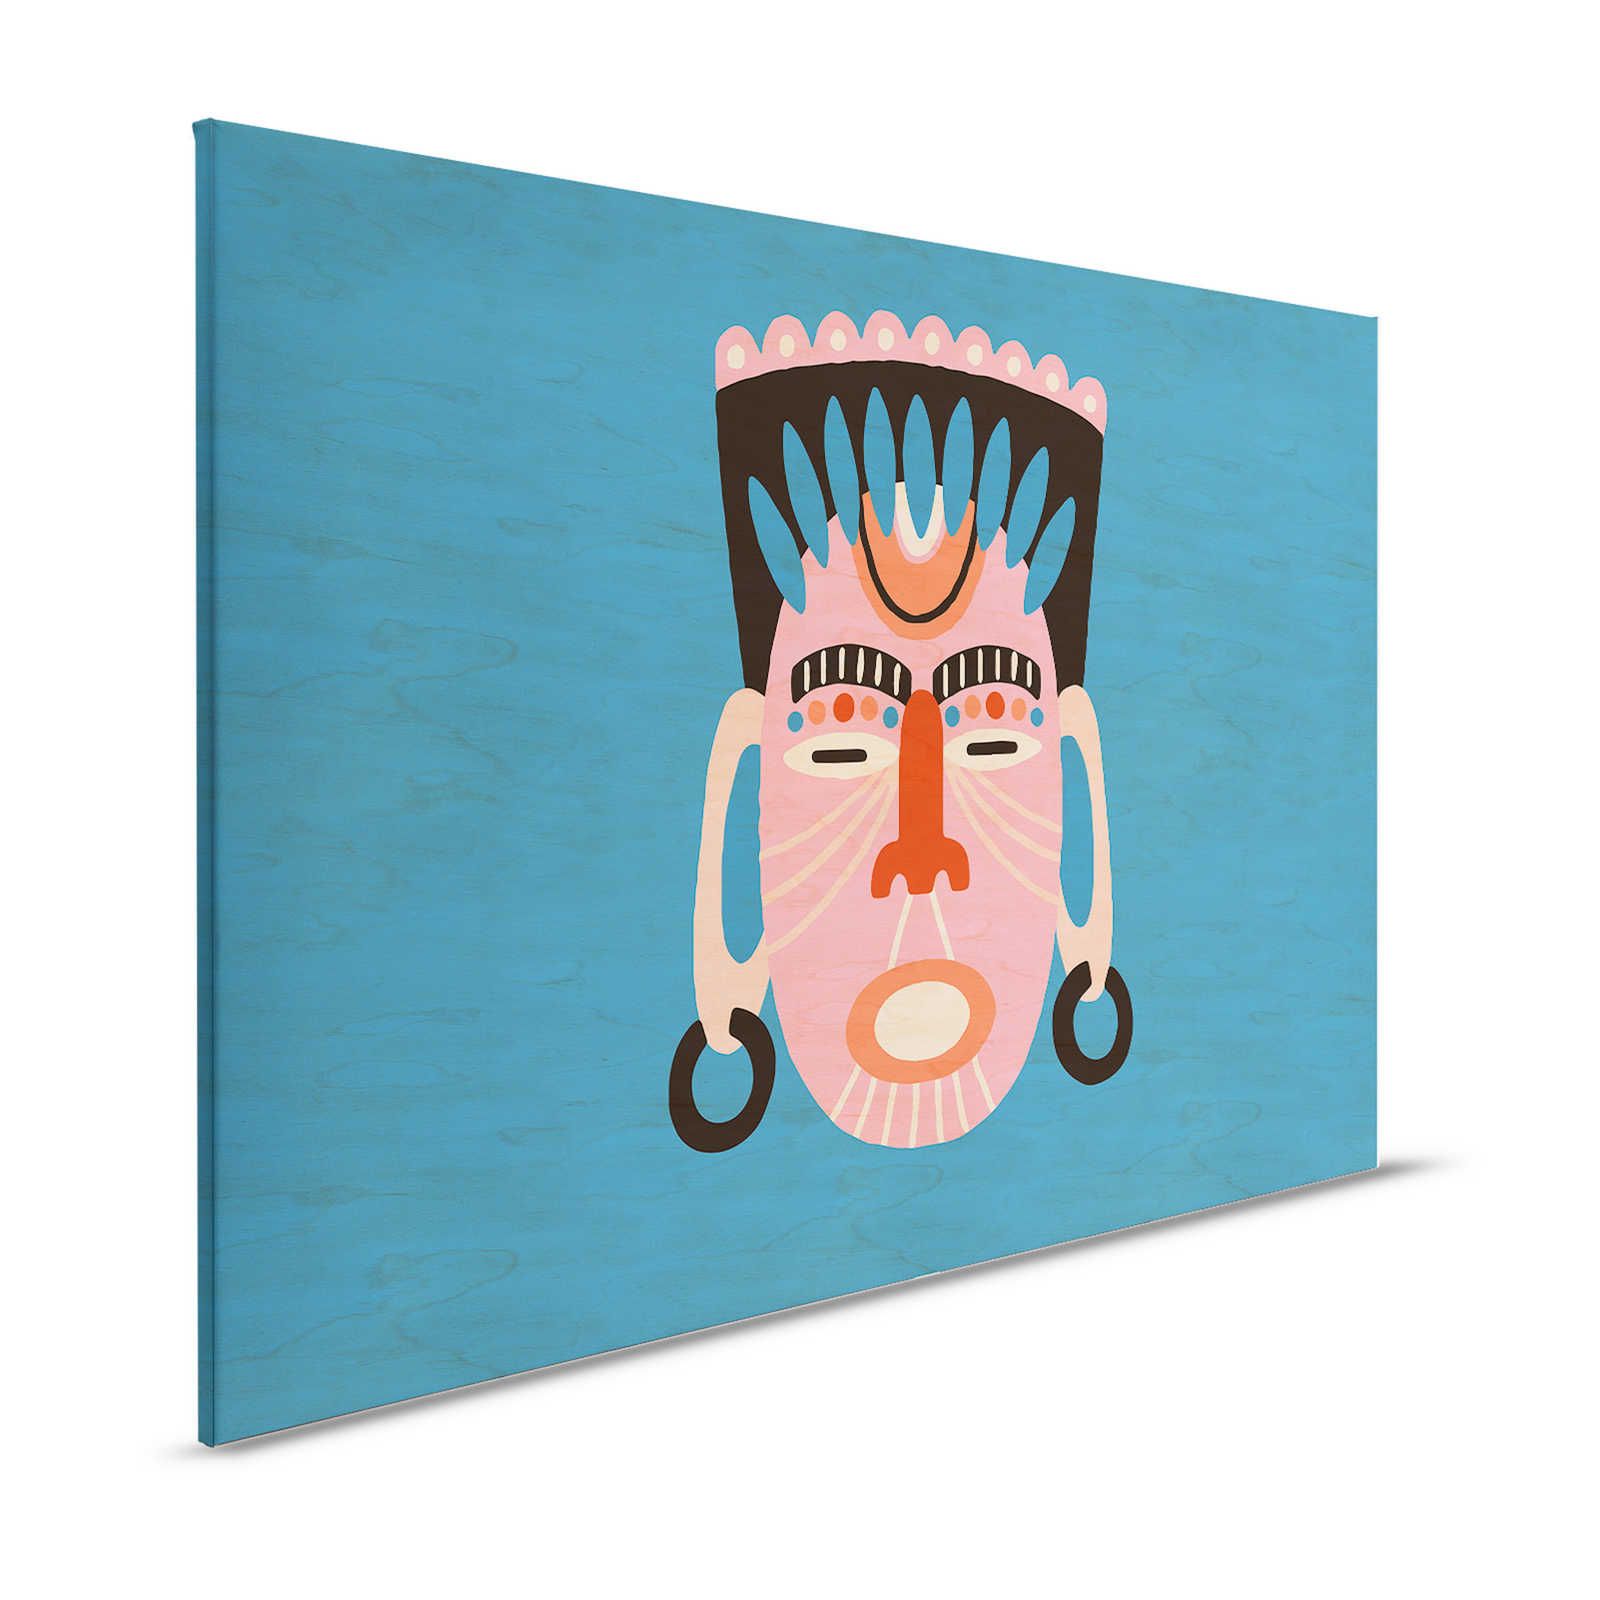 Overseas 3 - Toile bleue design ethnique avec masque - 1,20 m x 0,80 m
